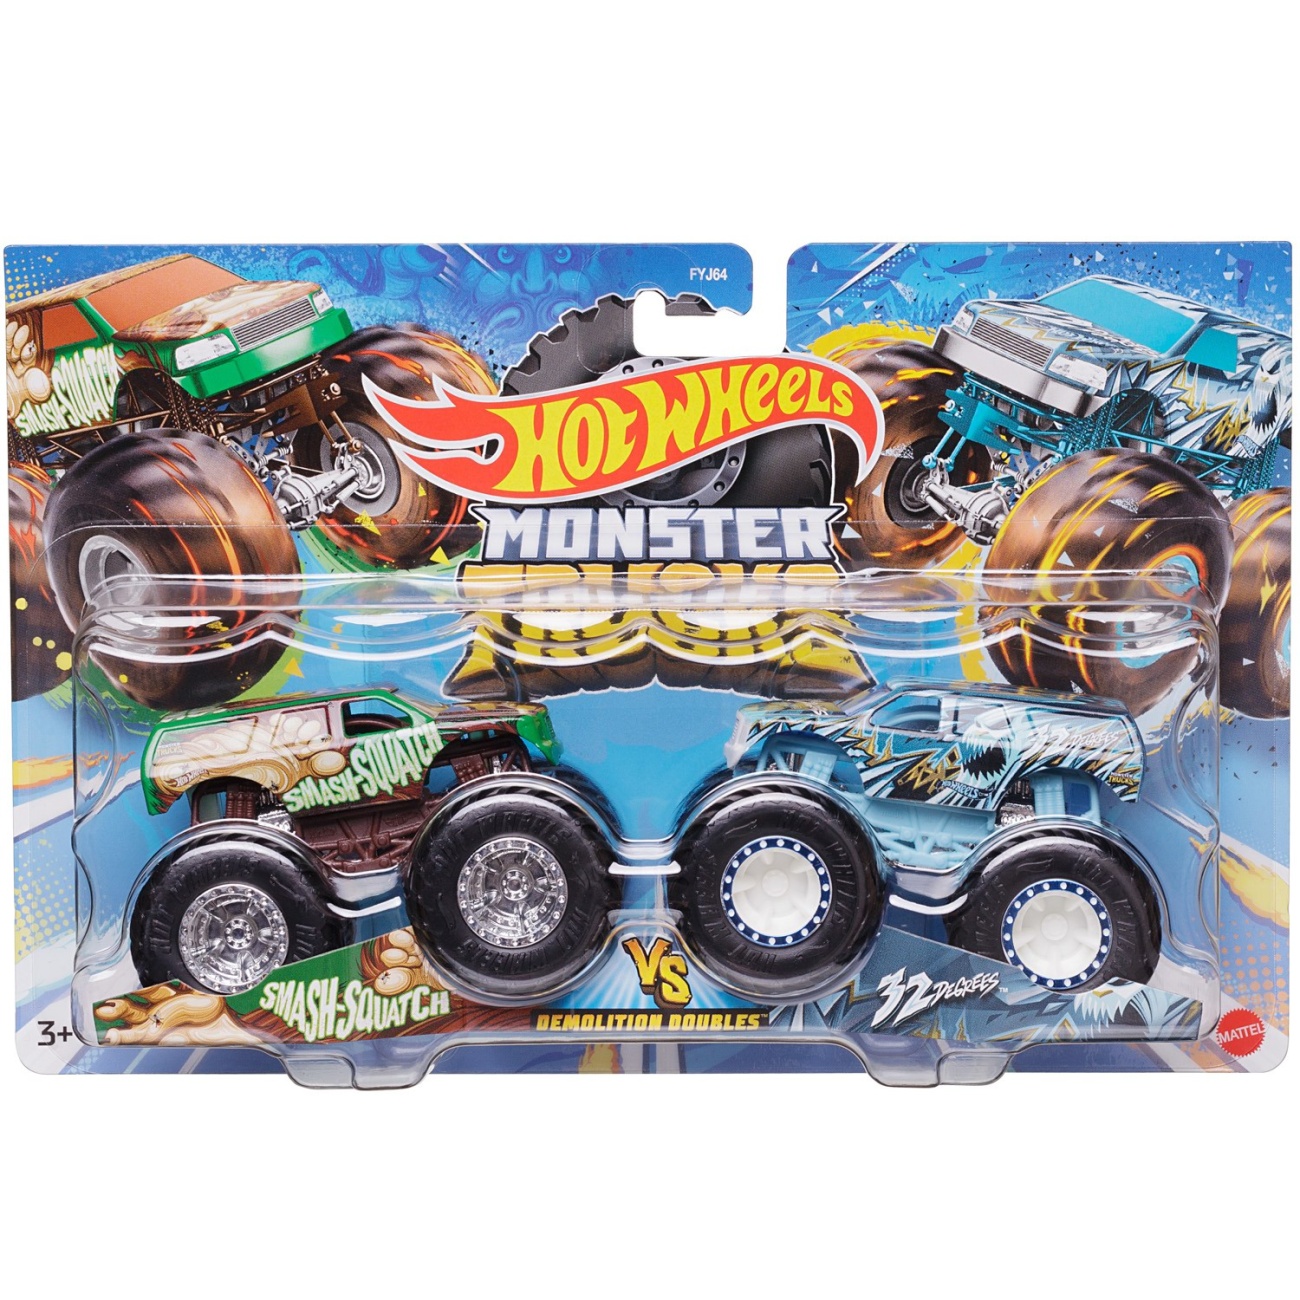 Игровой набор Mattel Hot Wheels Машинки Монстер трак взаимное уничтожение, набор из 2-х штук №7 FYJ64/7